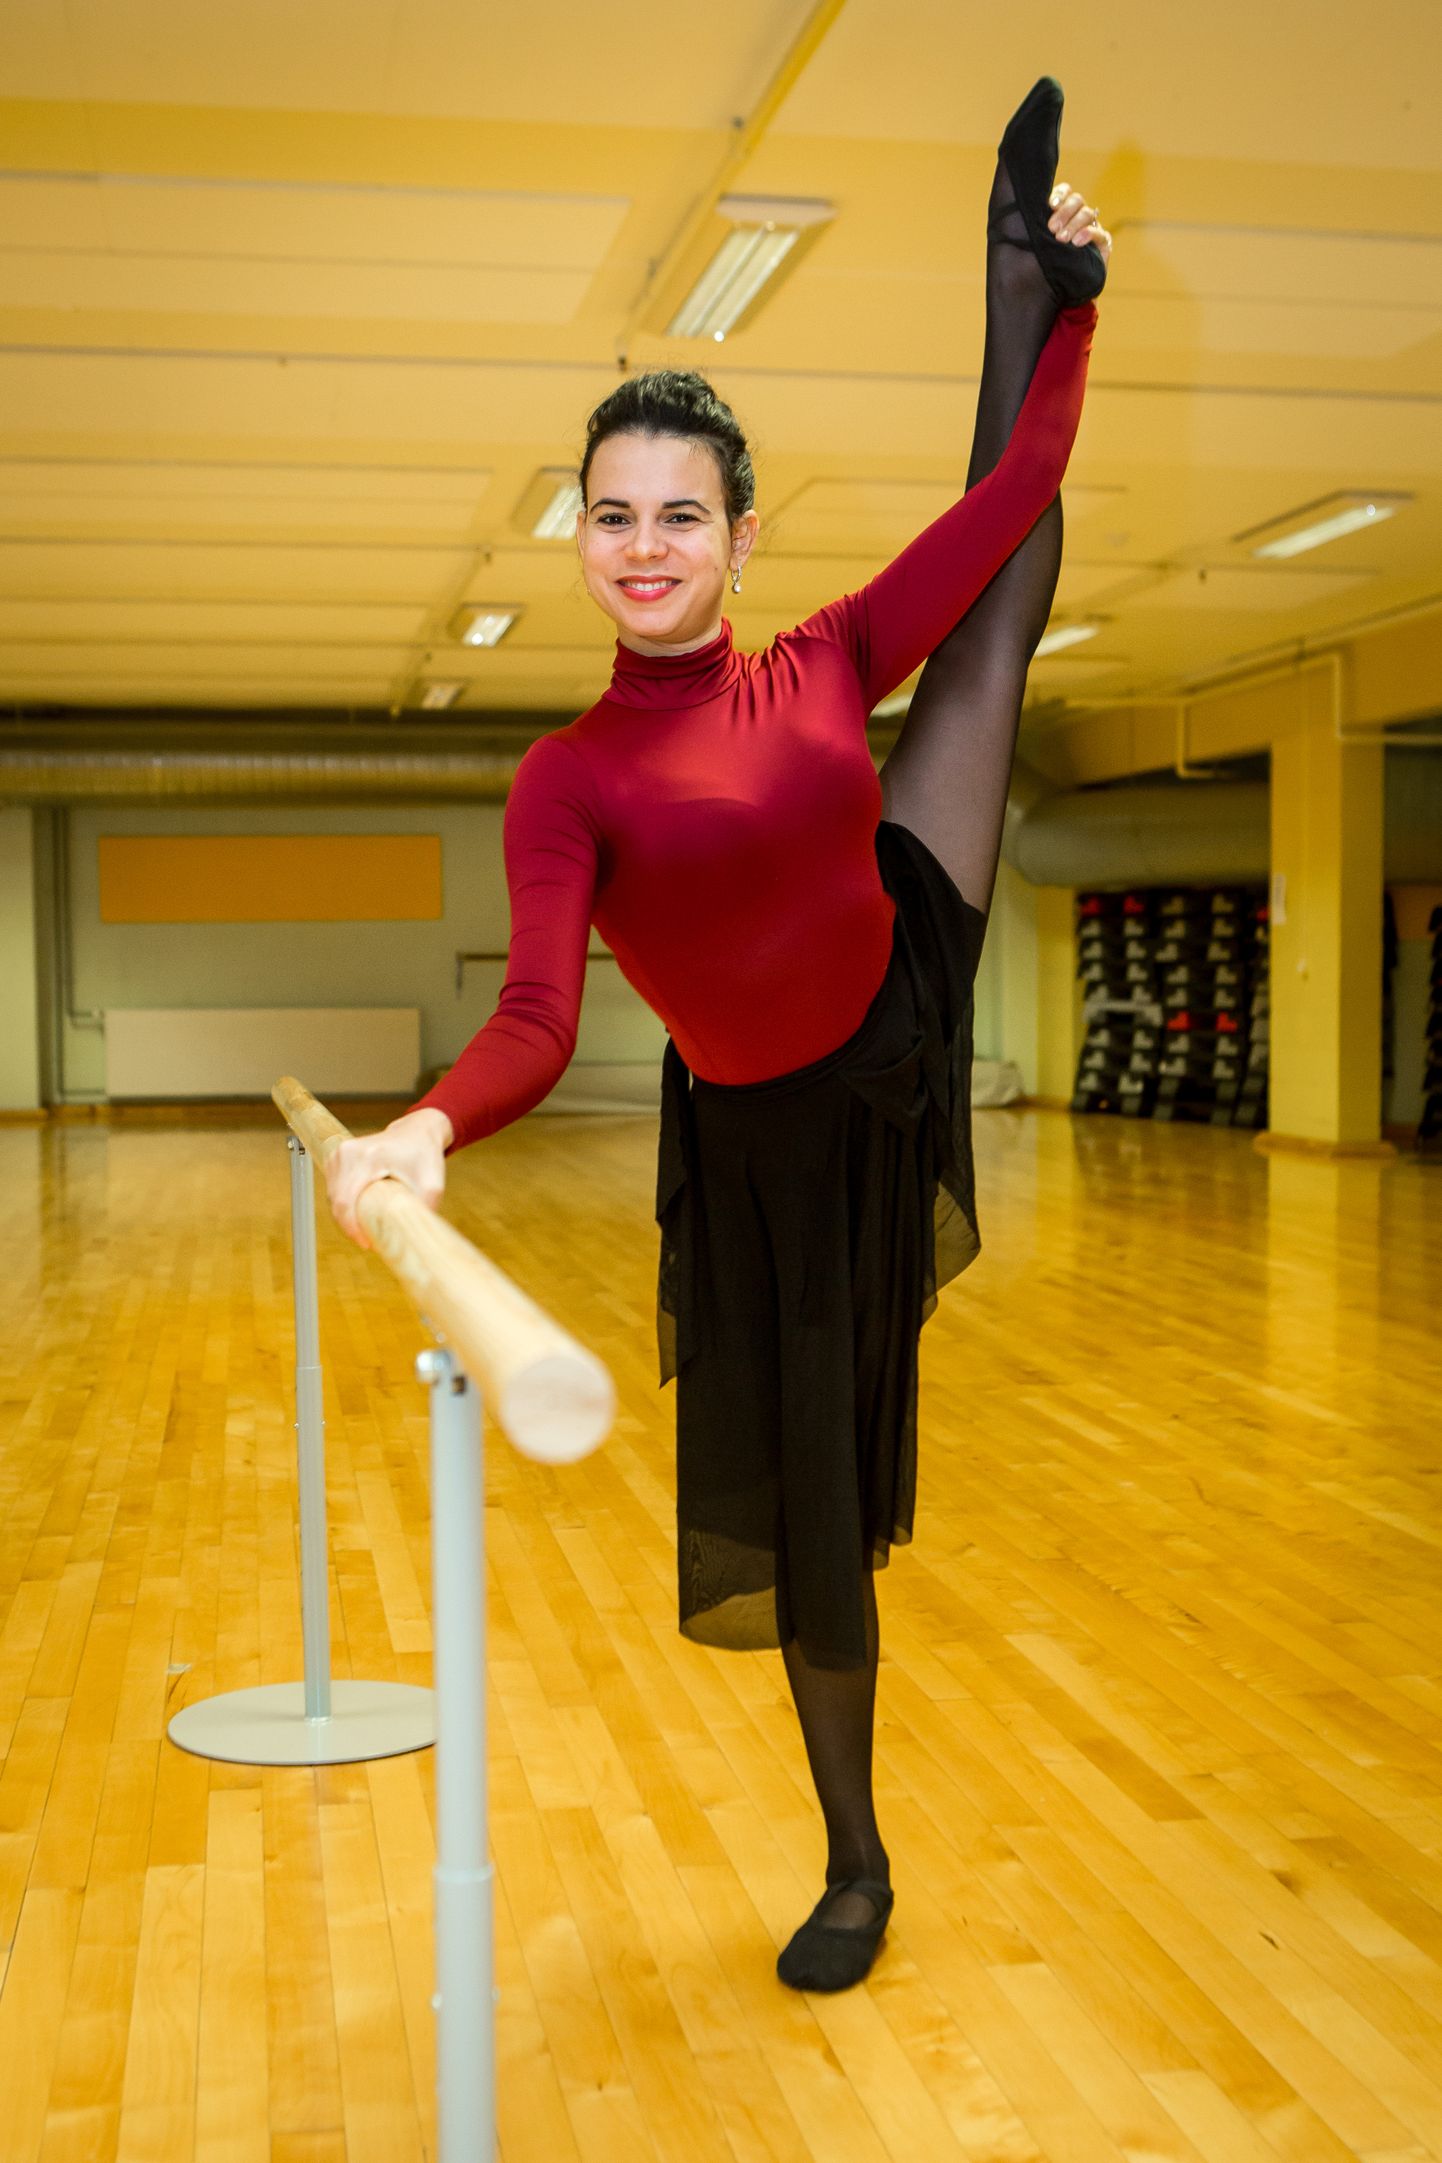 HINNATUD TREENER: "Olgu võimlemine või tants – nende alus on siiski ballett," leiab Aylin.